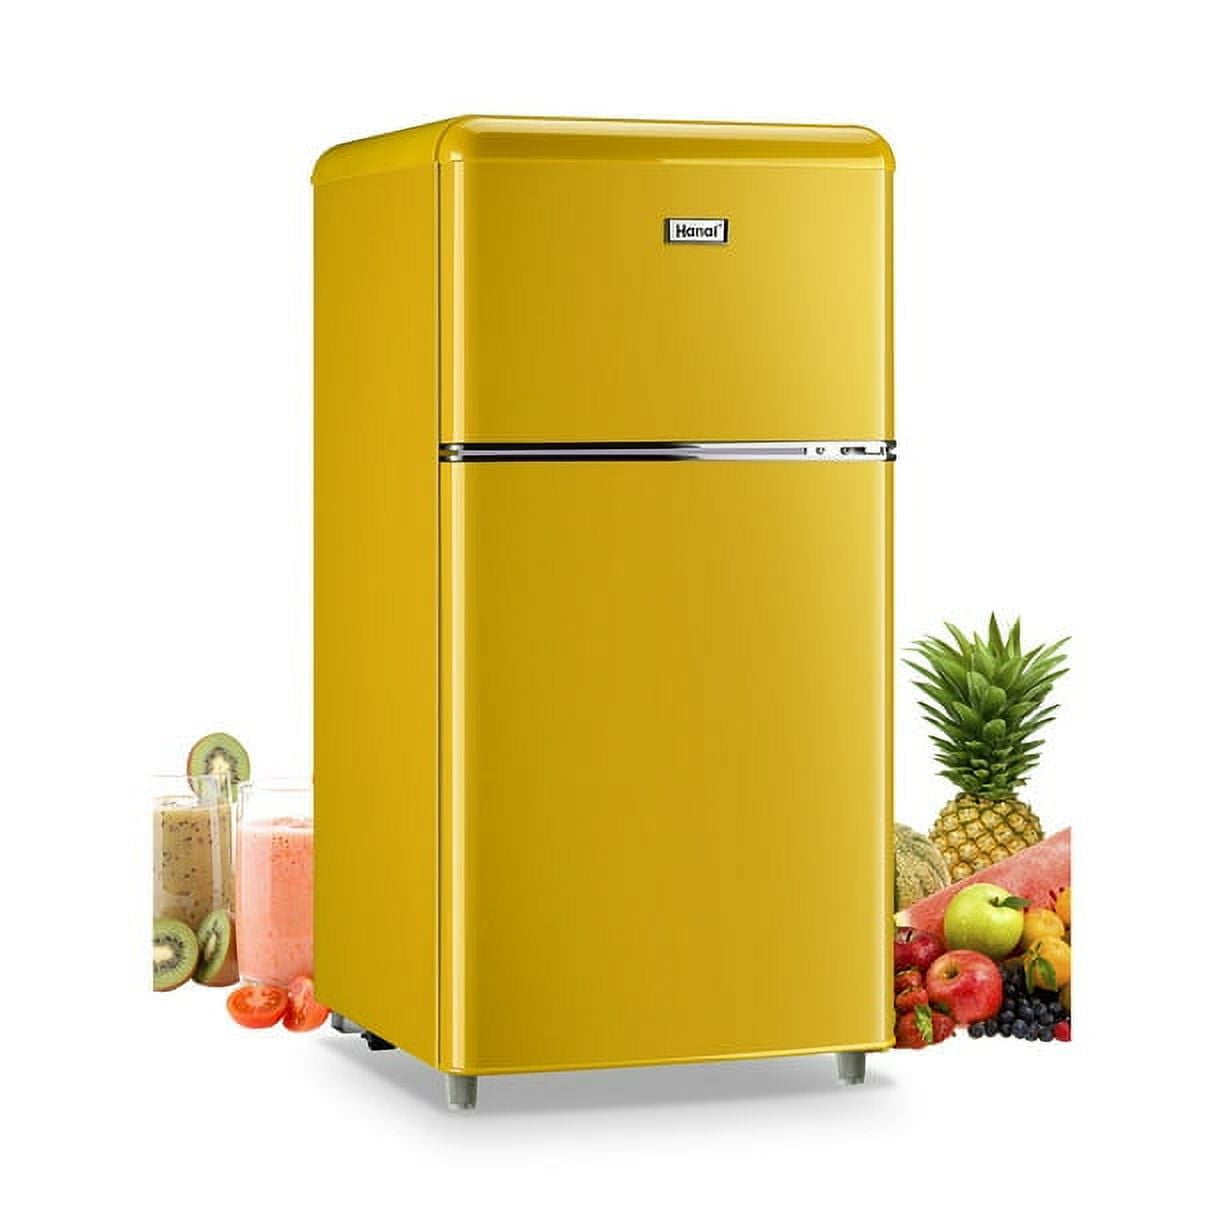 Wanai Compact Refrigerator 3.2 CU.FT Classic Retro Refrigerator 2 Door Mini Refrigerator Adjustable Remove Glass Shelves Refrigerator Suitable for